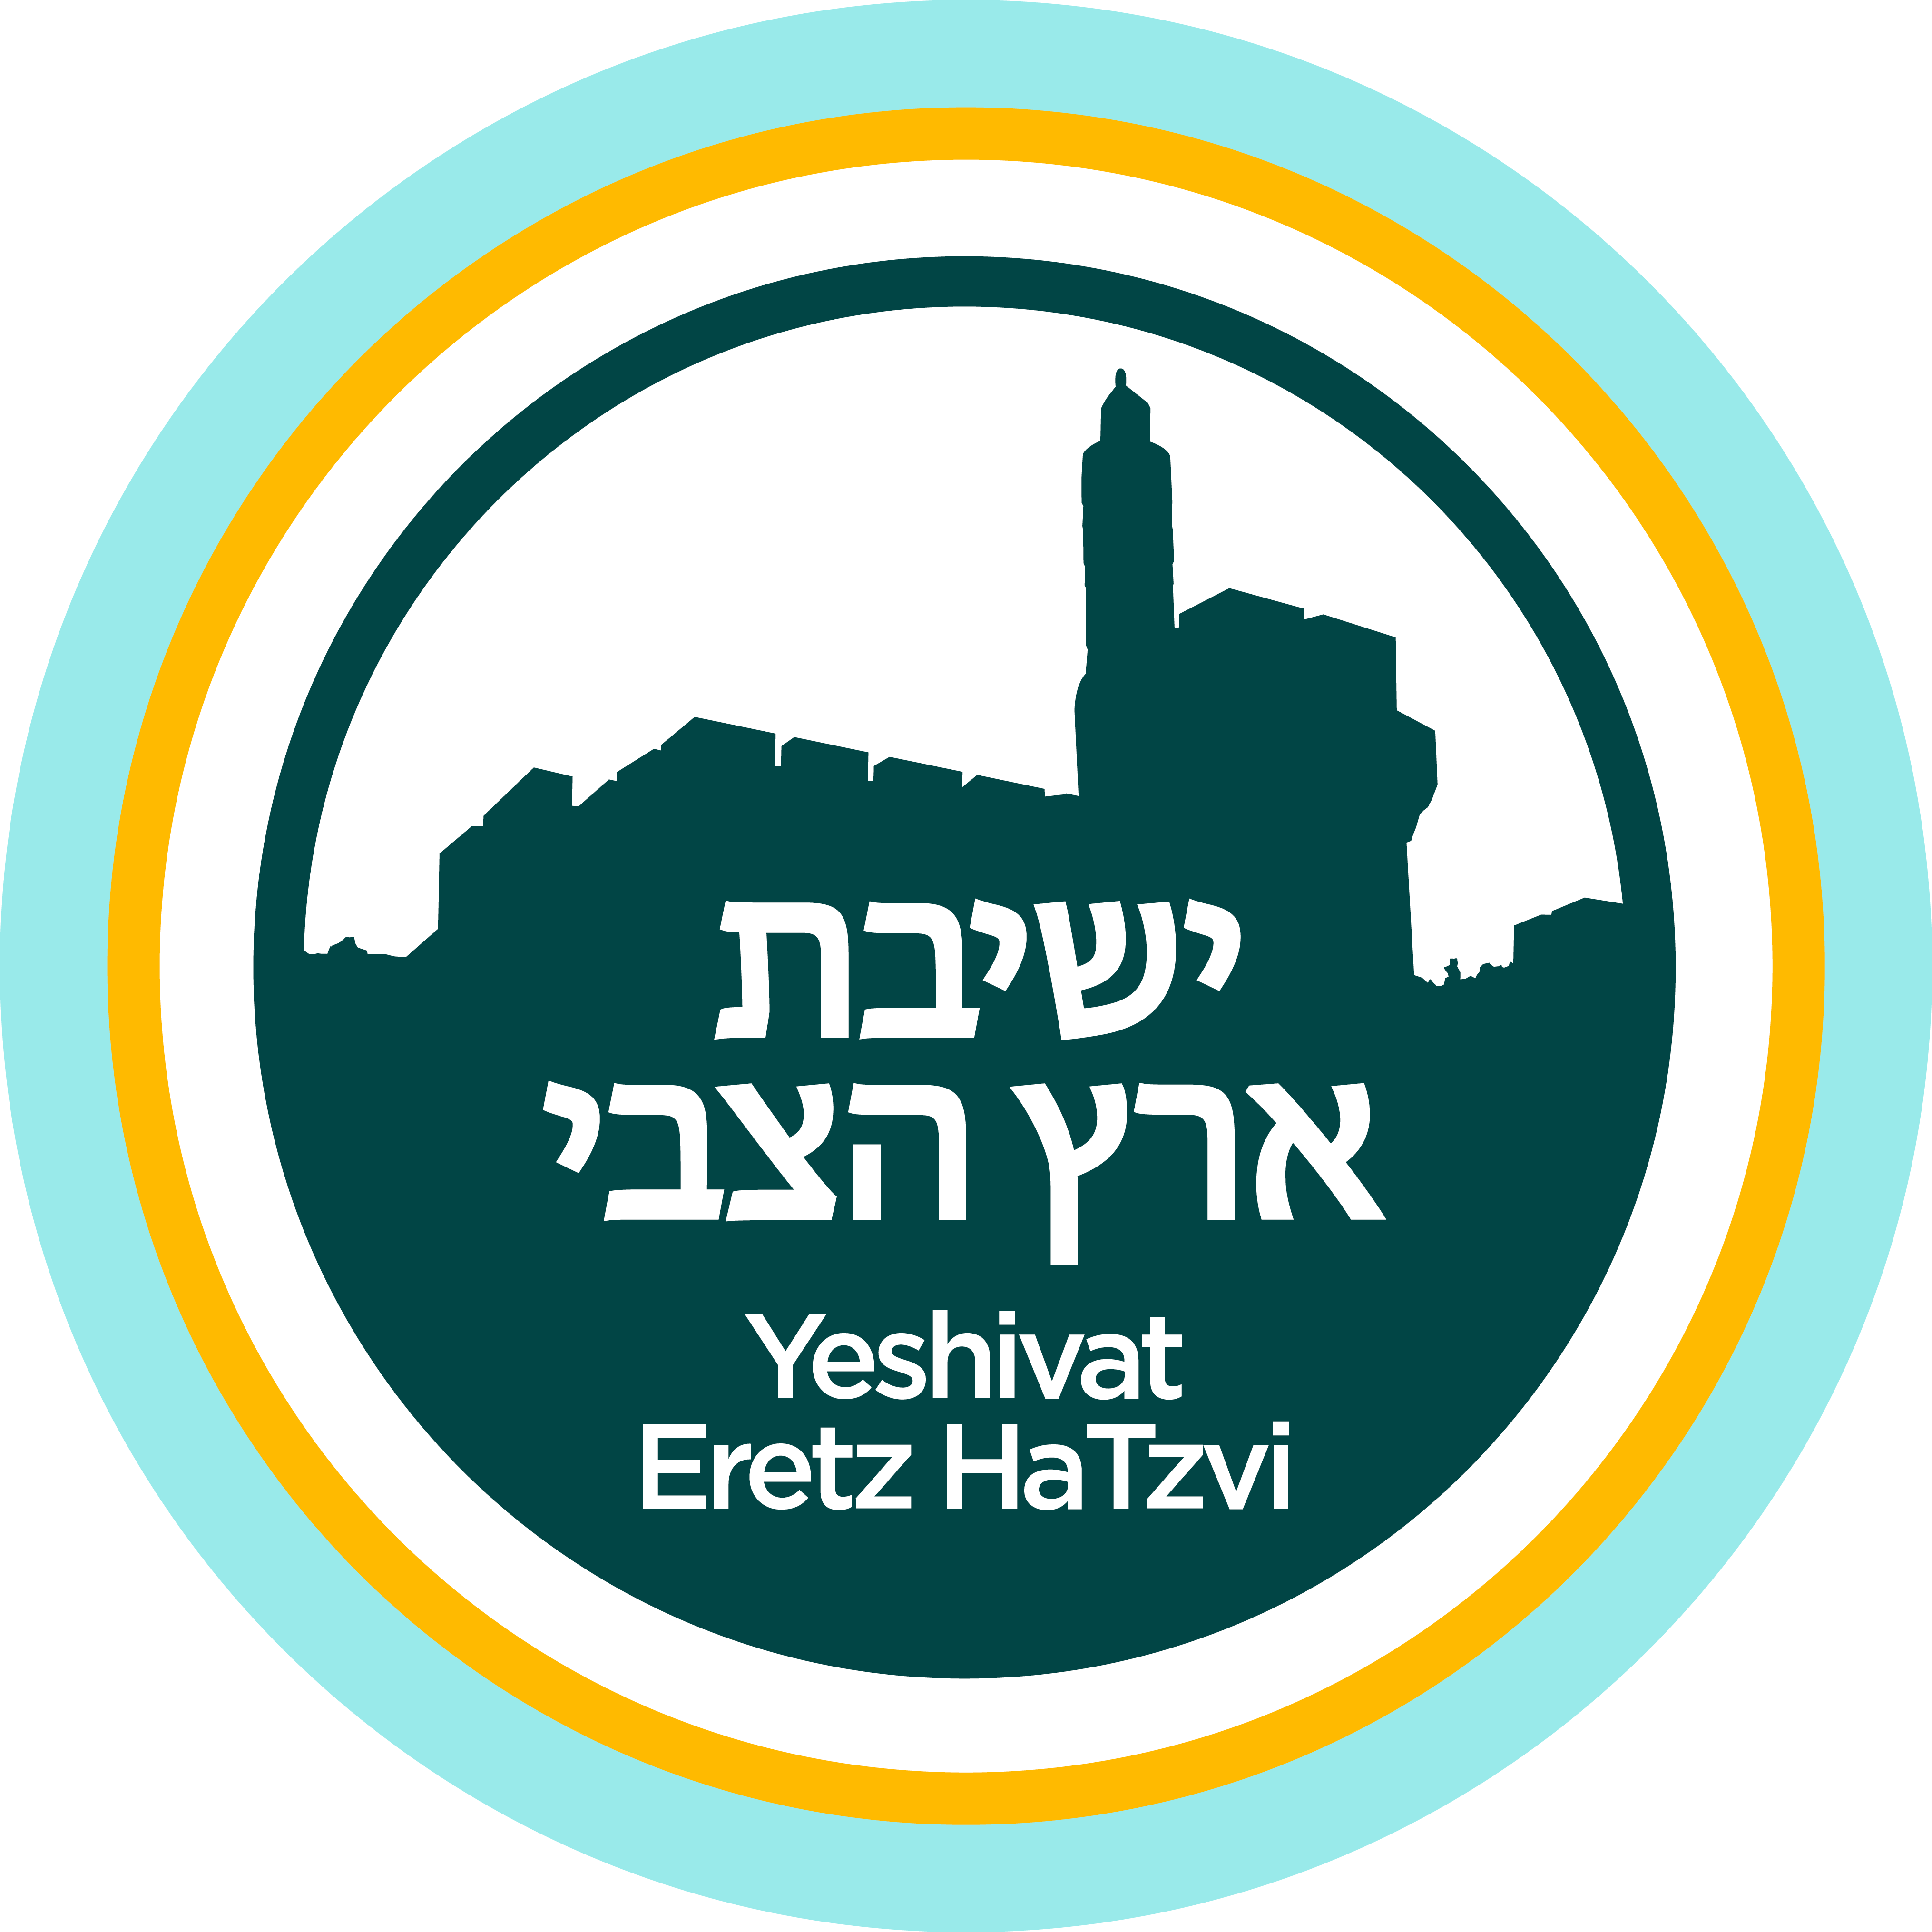 Eretz HaTzvi